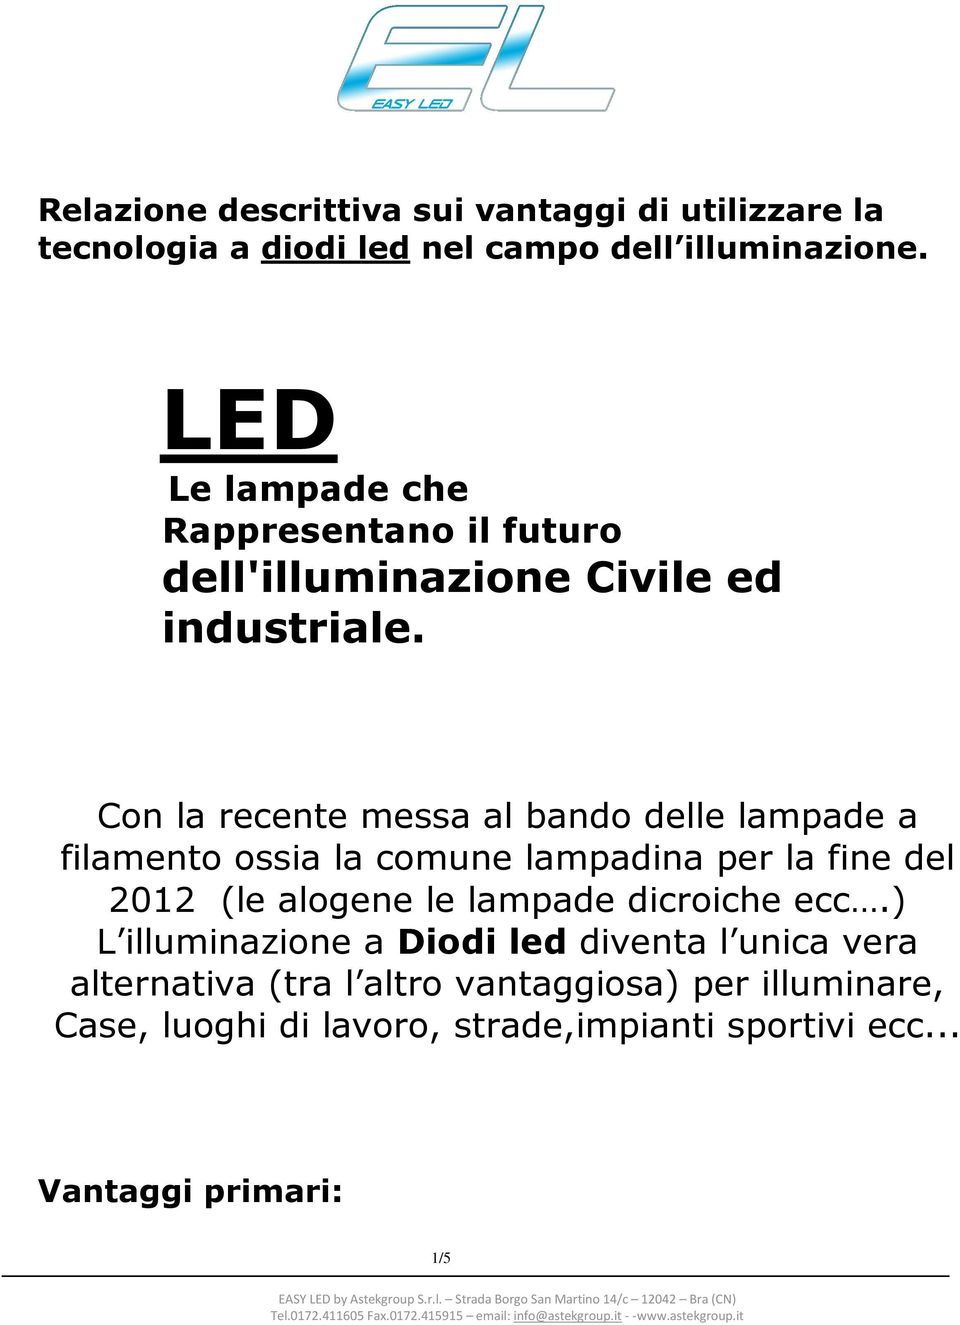 Con la recente messa al bando delle lampade a filamento ossia la comune lampadina per la fine del 2012 (le alogene le lampade